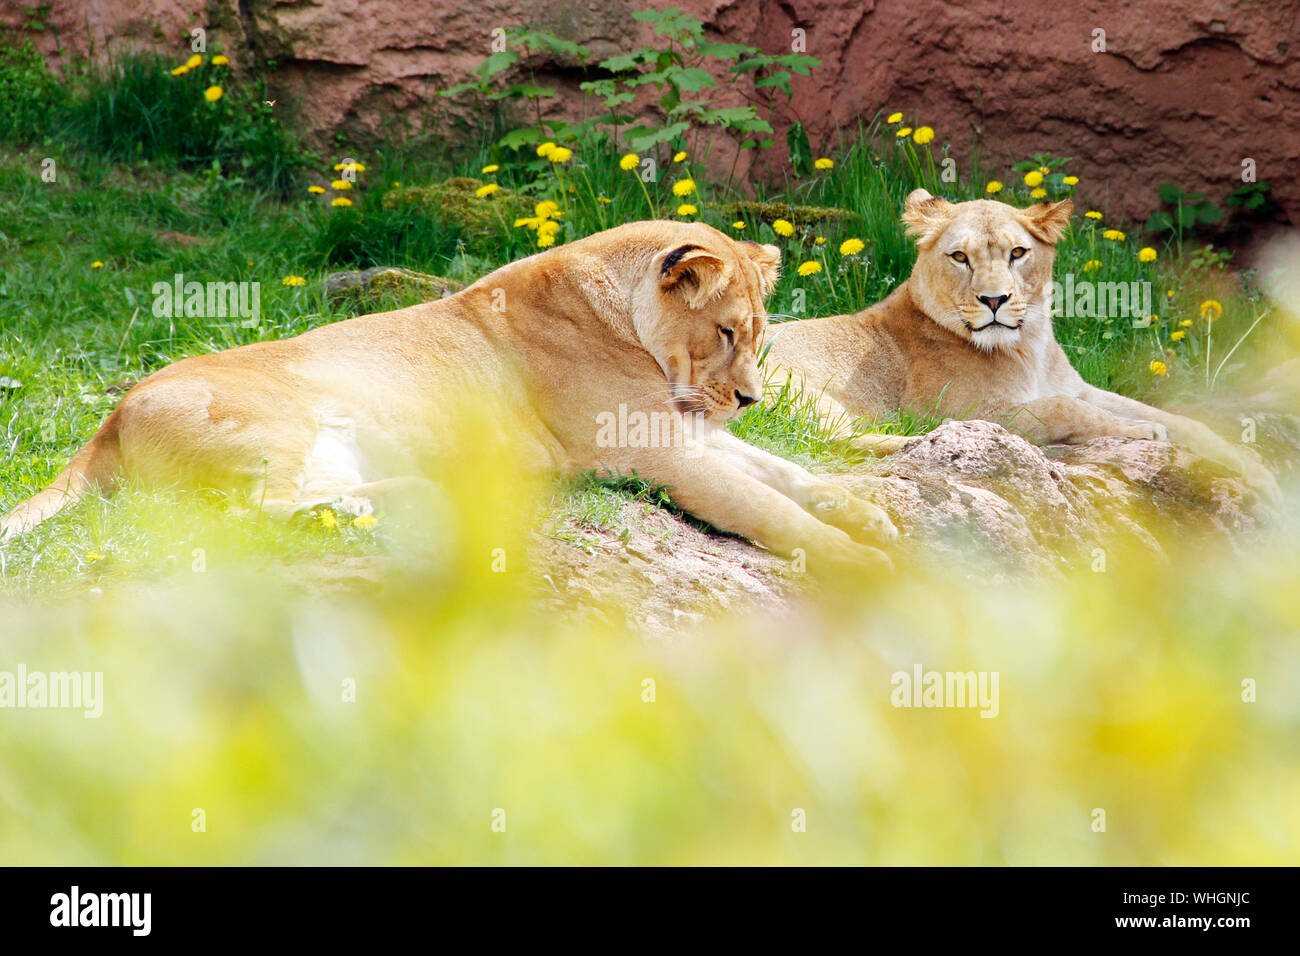 Panthera leo leo Jungtiere Berberlöwe Foto de stock